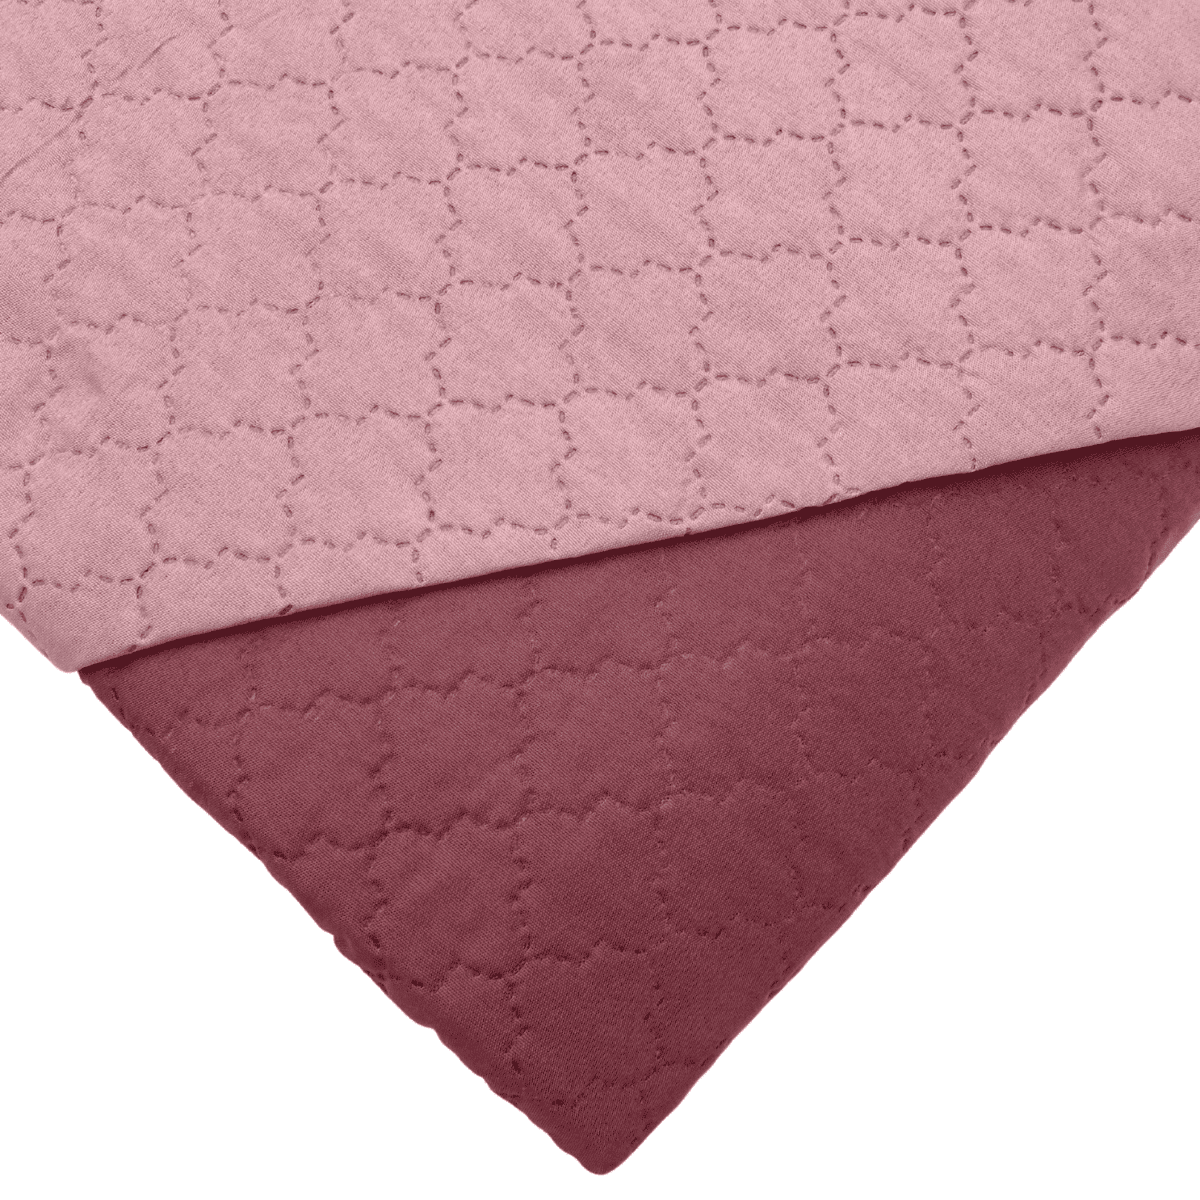 Copriletto-bicolor-rosa-morbida-microfibra-soffice-trapuntata-caldo-170x250-210-1-piazza-2-piazze-polestere-oekotex-dettaglio